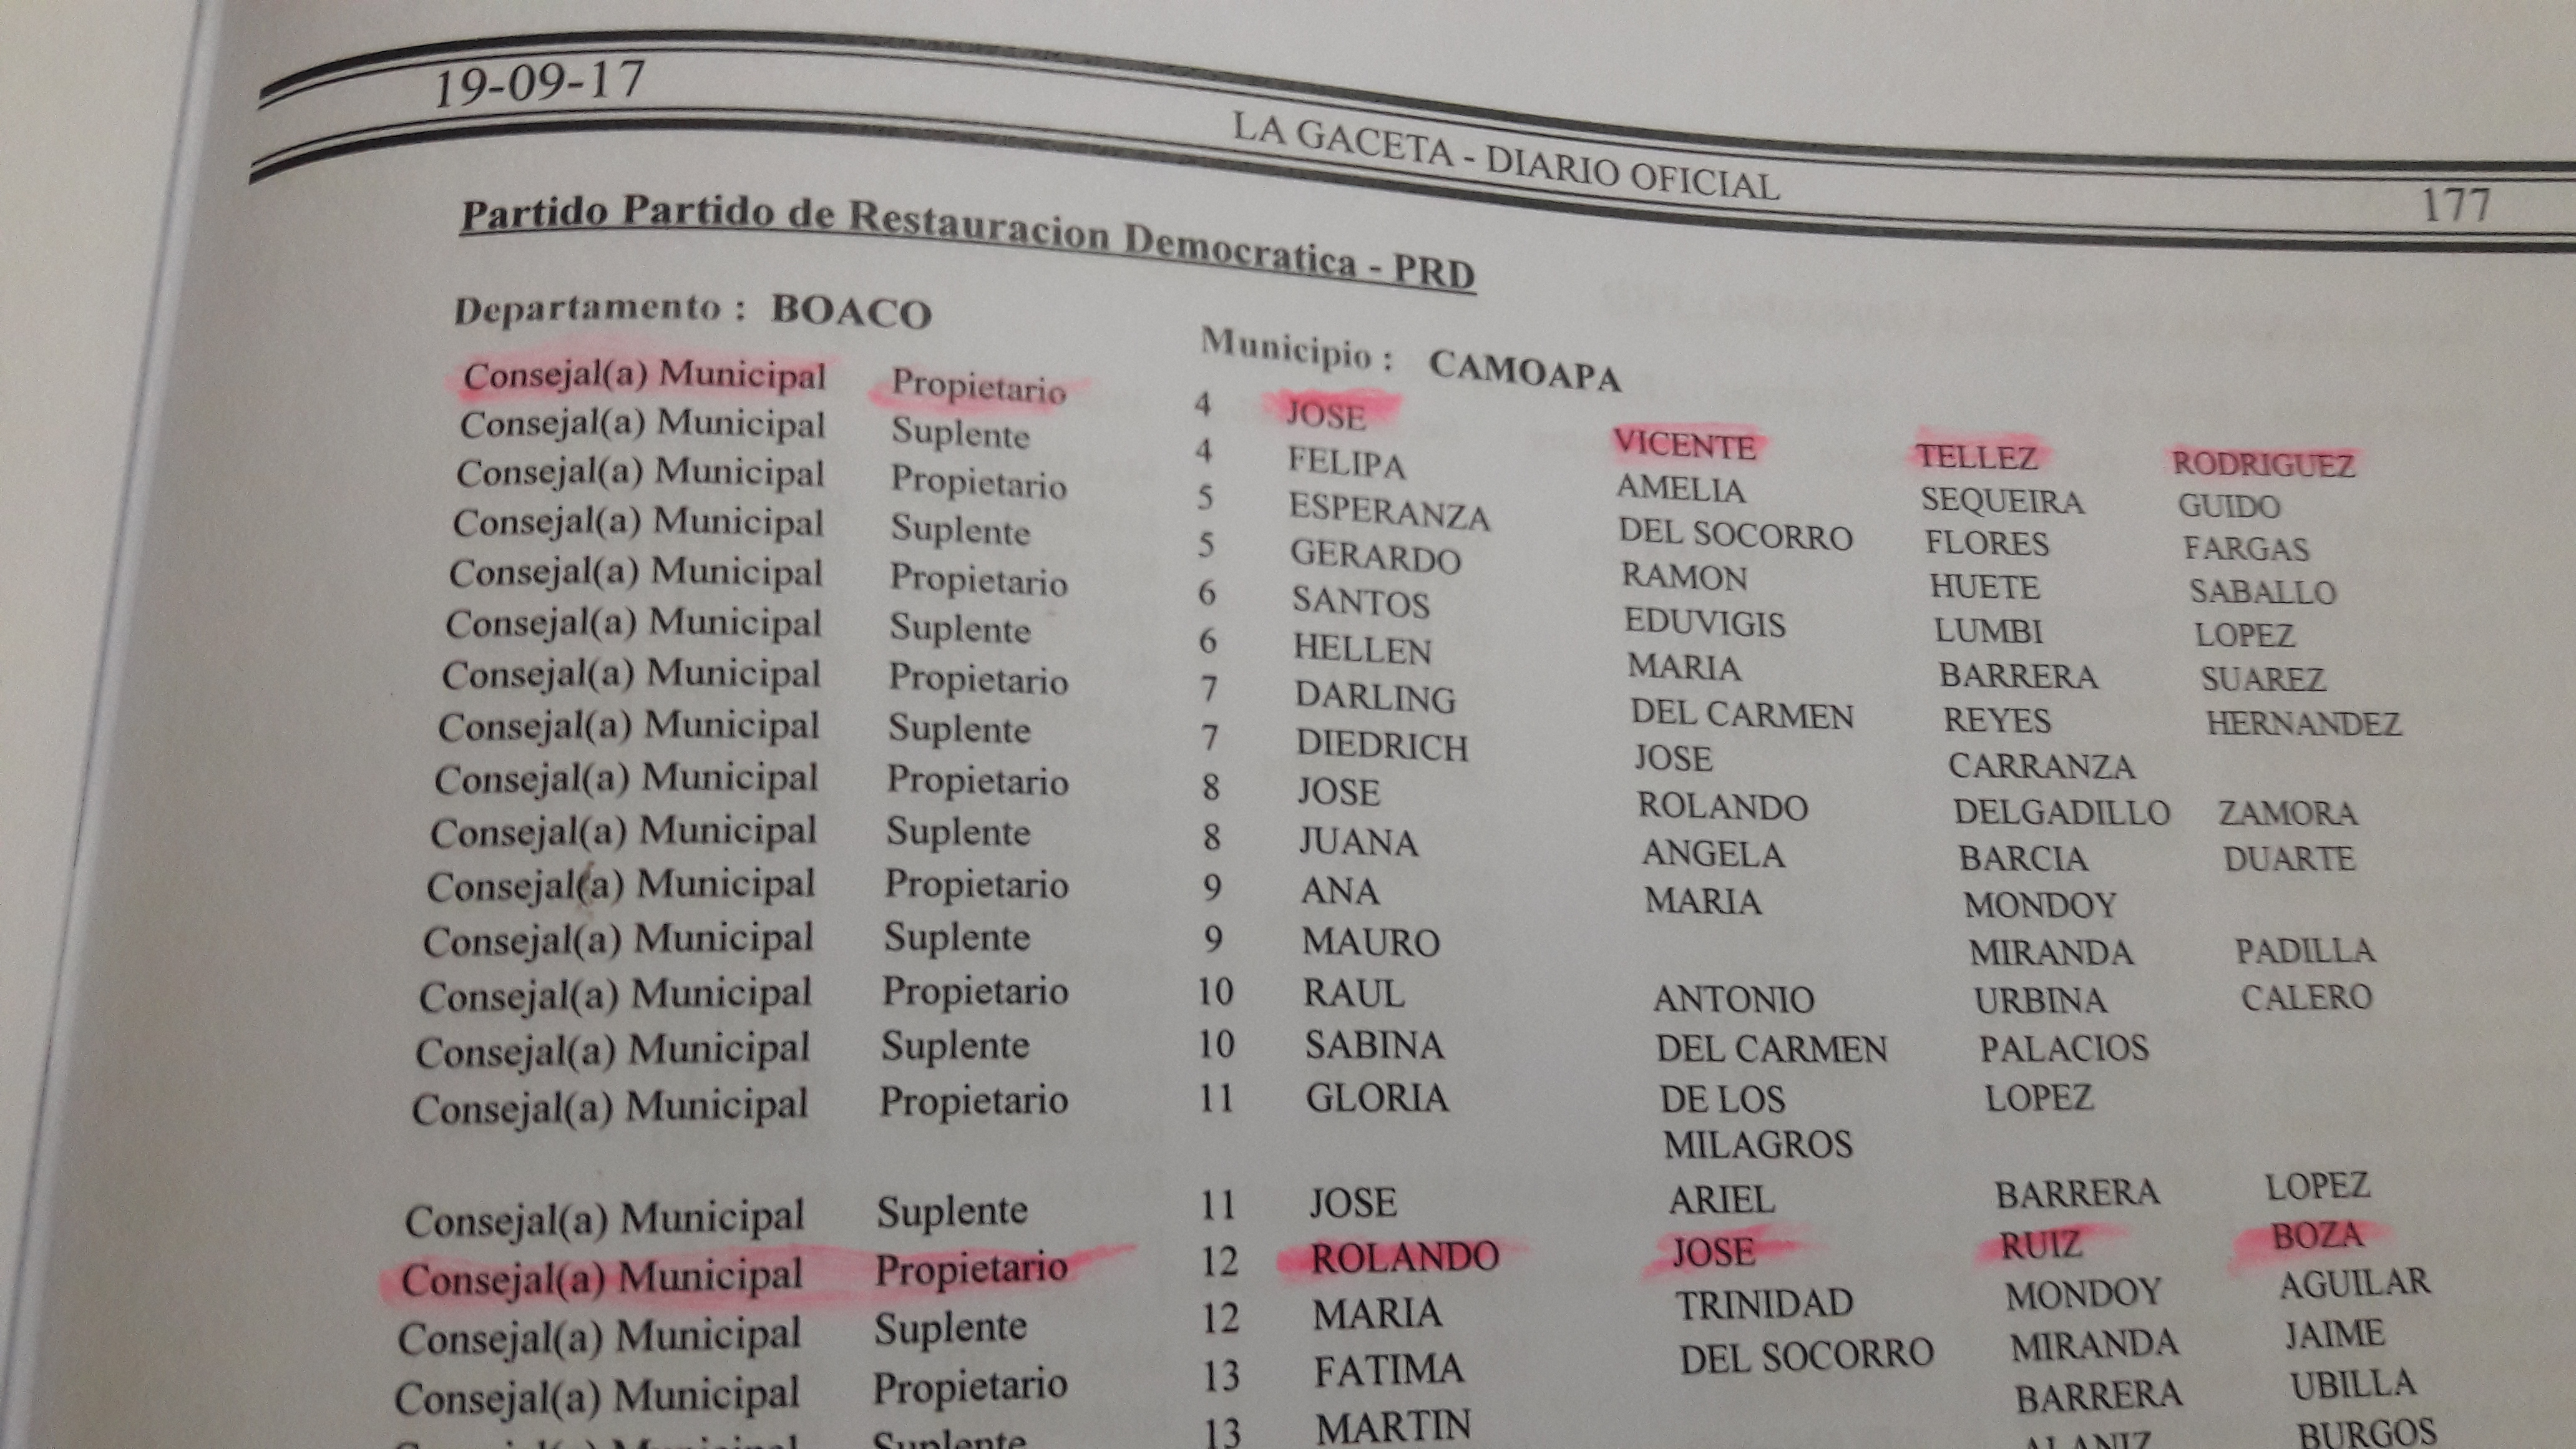 Candidatos fantasma en Camoapa. Lista oficial publicada en La Gaceta.